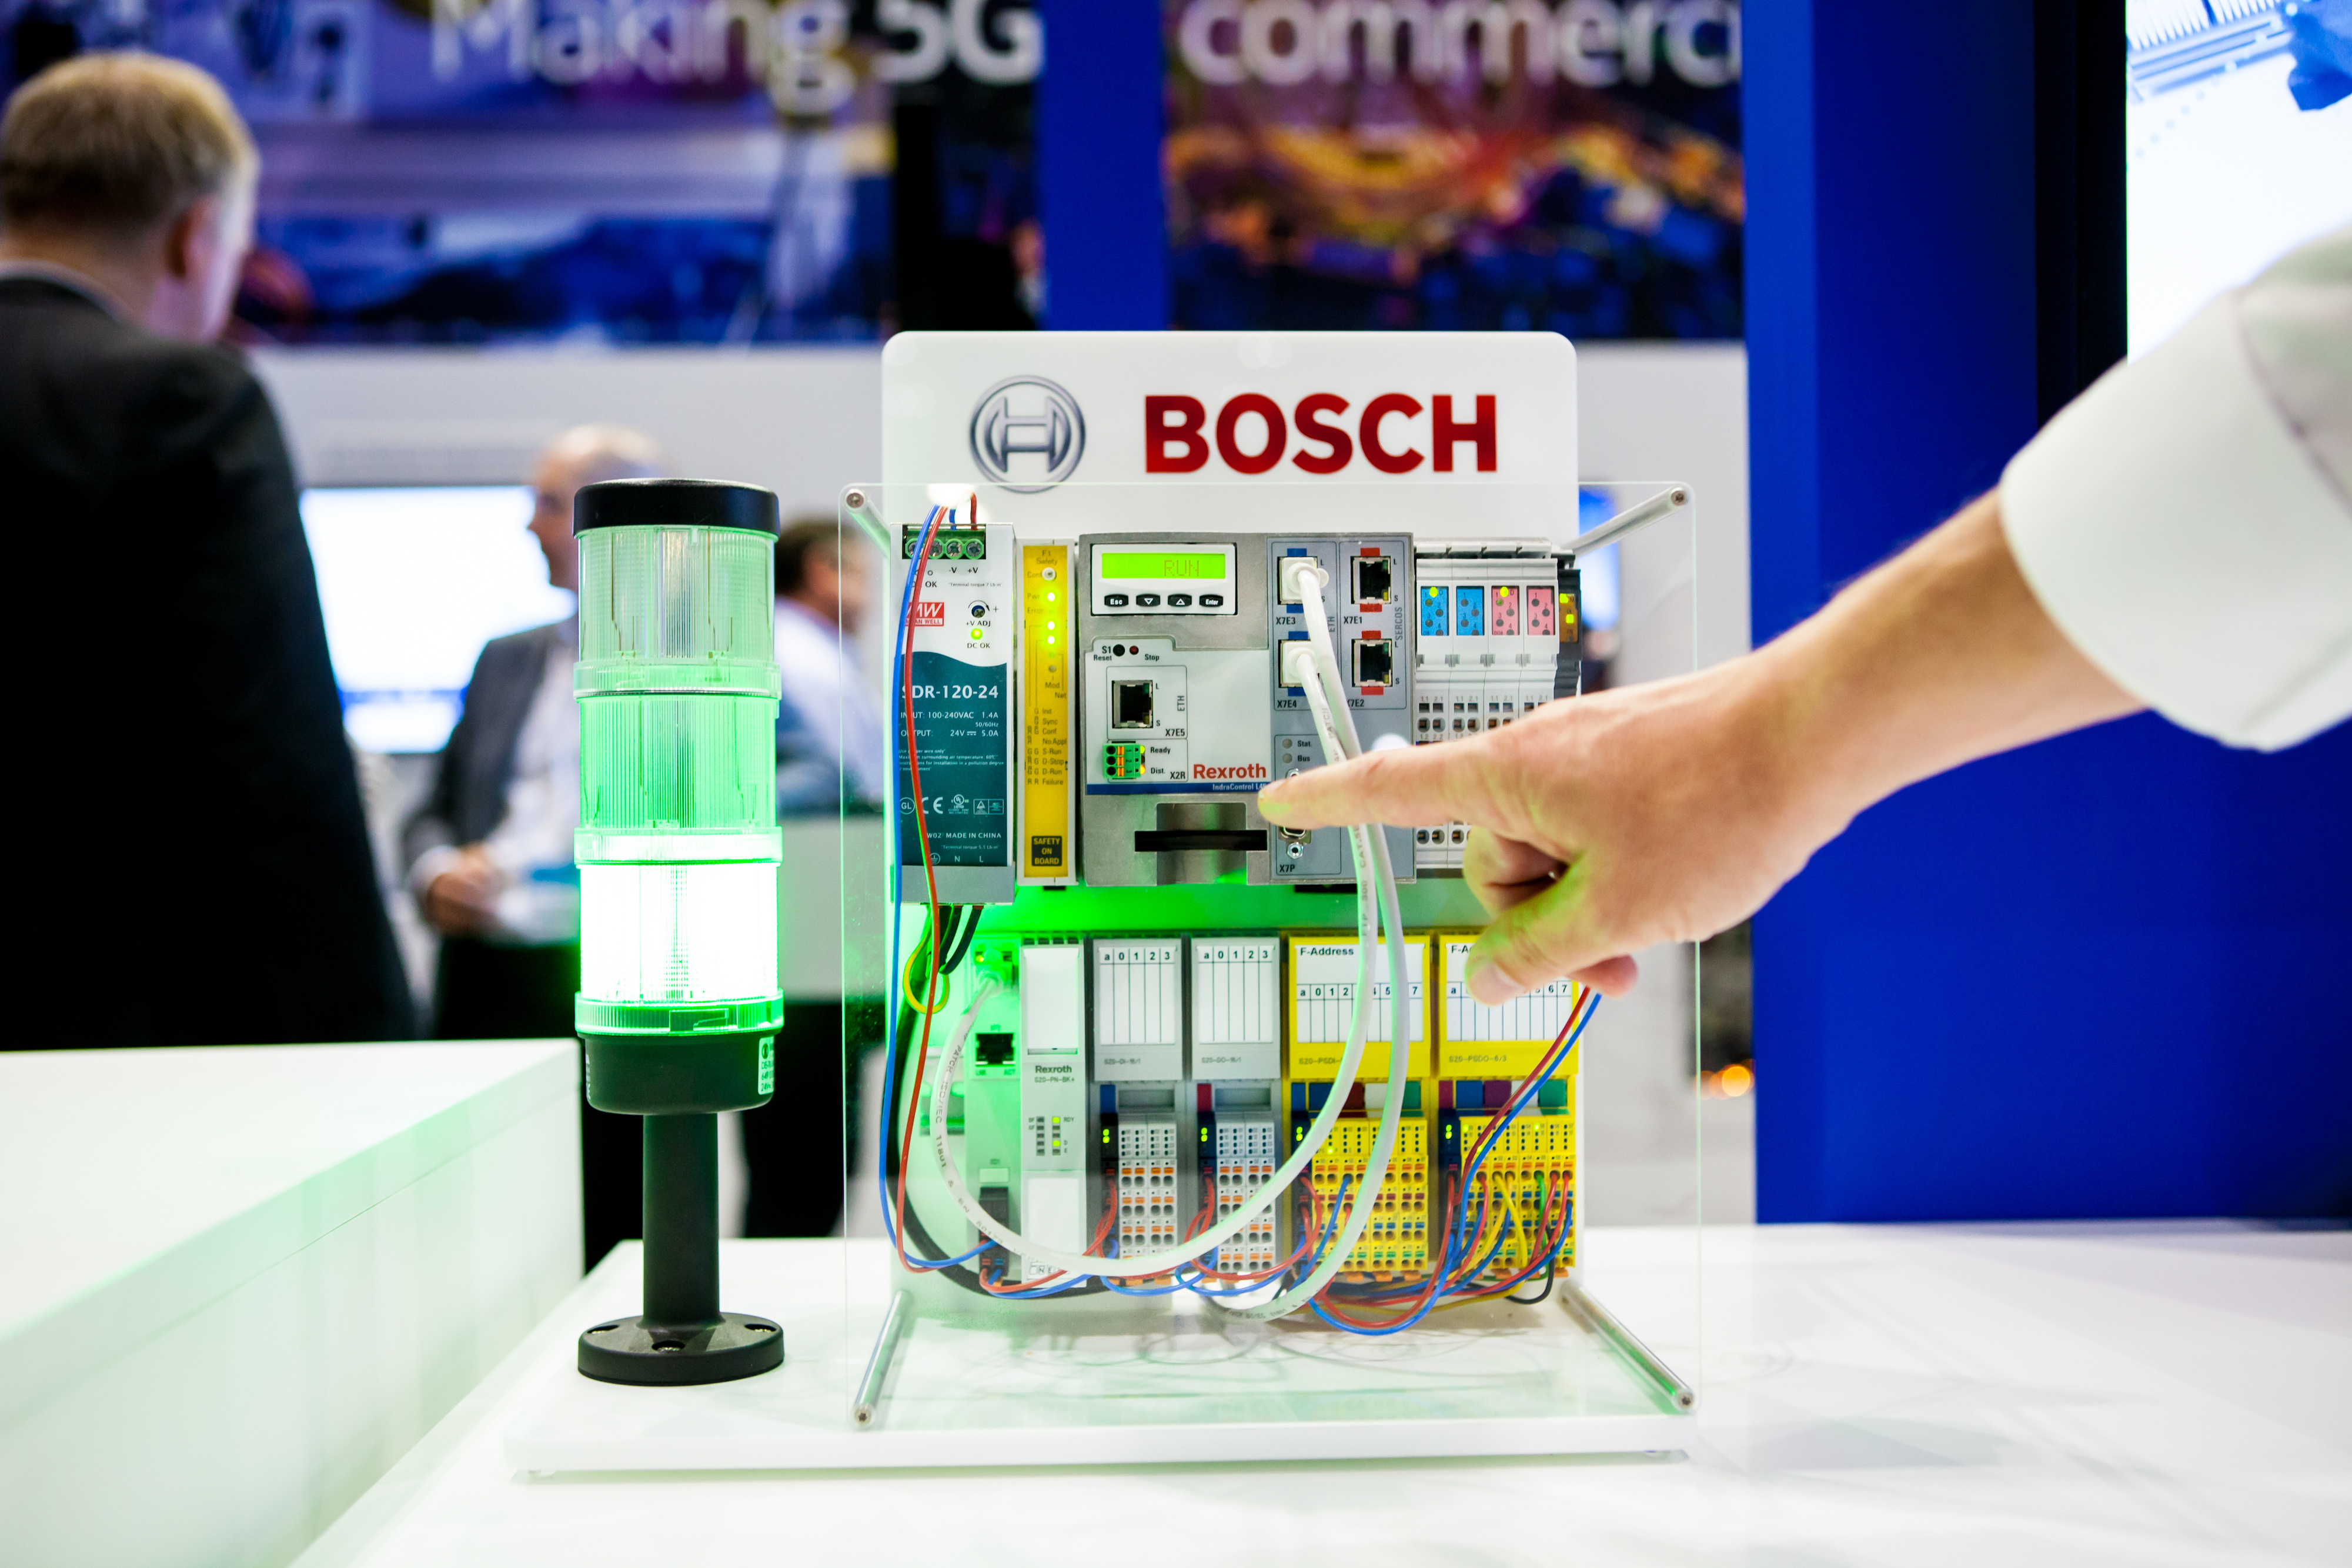 Bosch 5G demonstrator